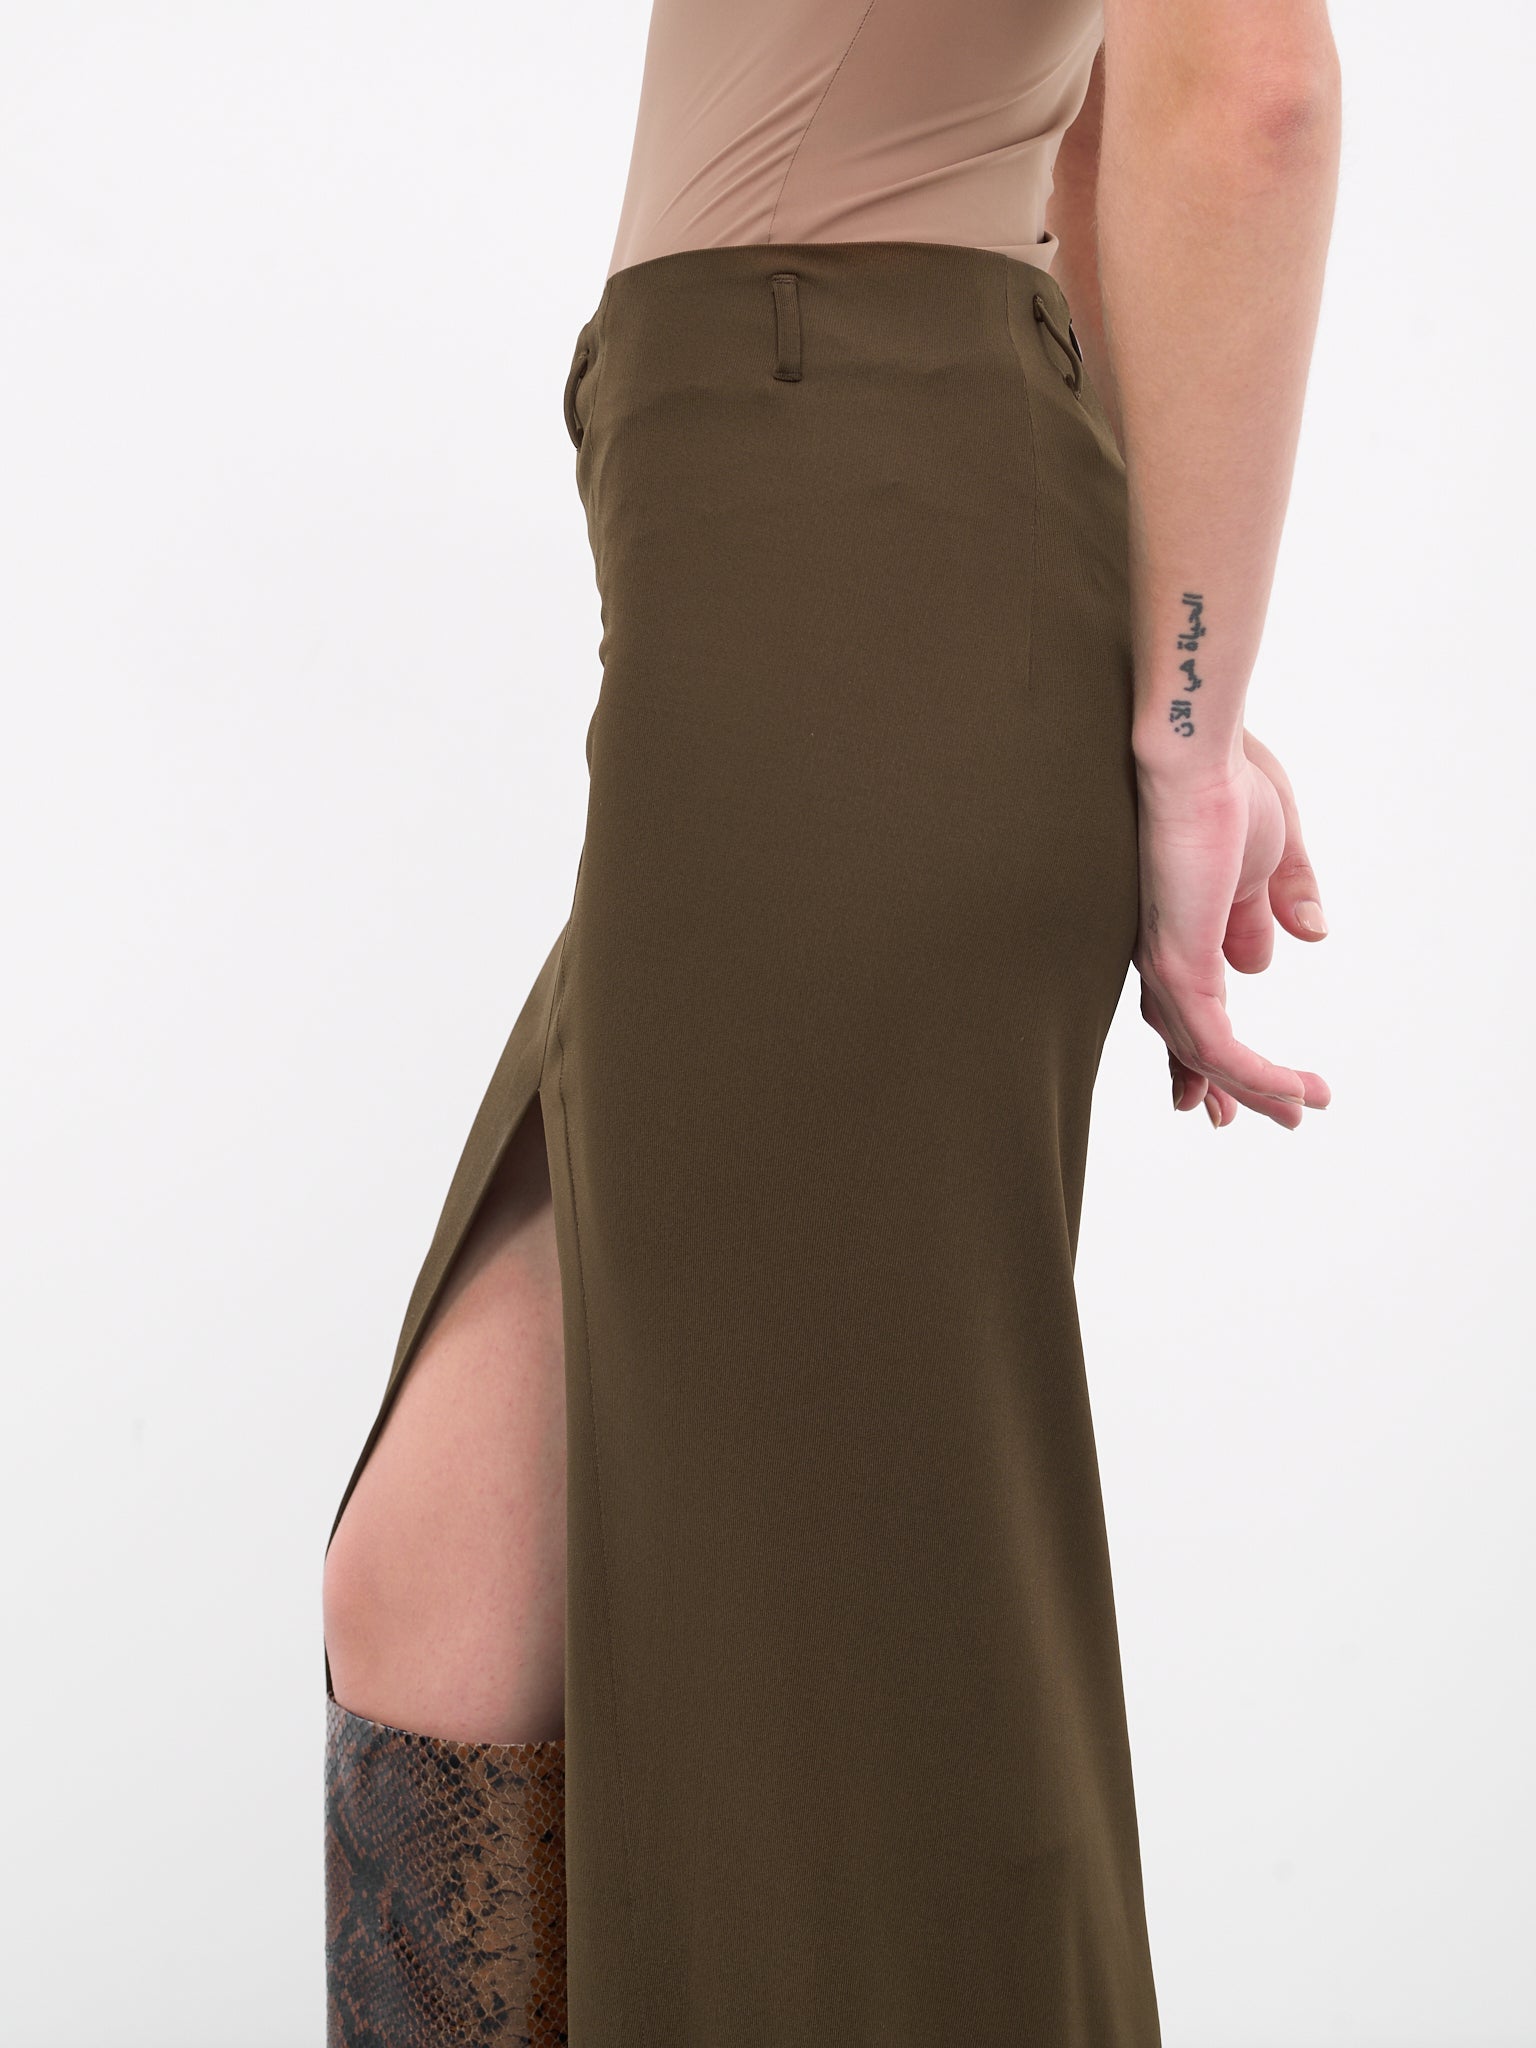 Strangelove Skirt (STRANGELOVE-R1-UMBER)